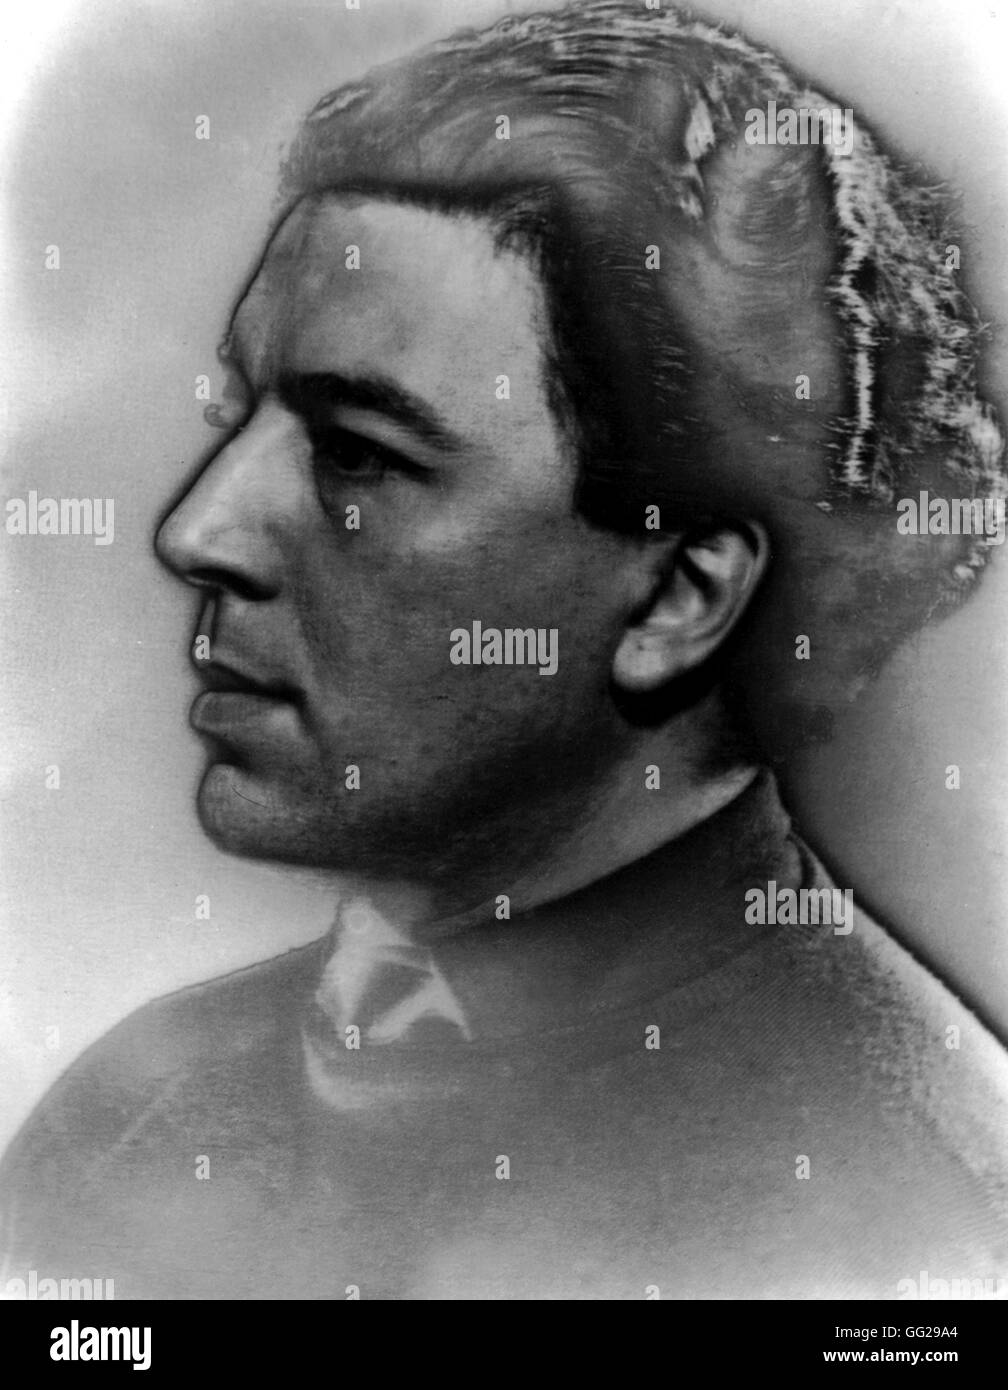 Retrato de André Breton en 1929. Fotografía por Man Ray Francia del siglo XX. Foto de stock